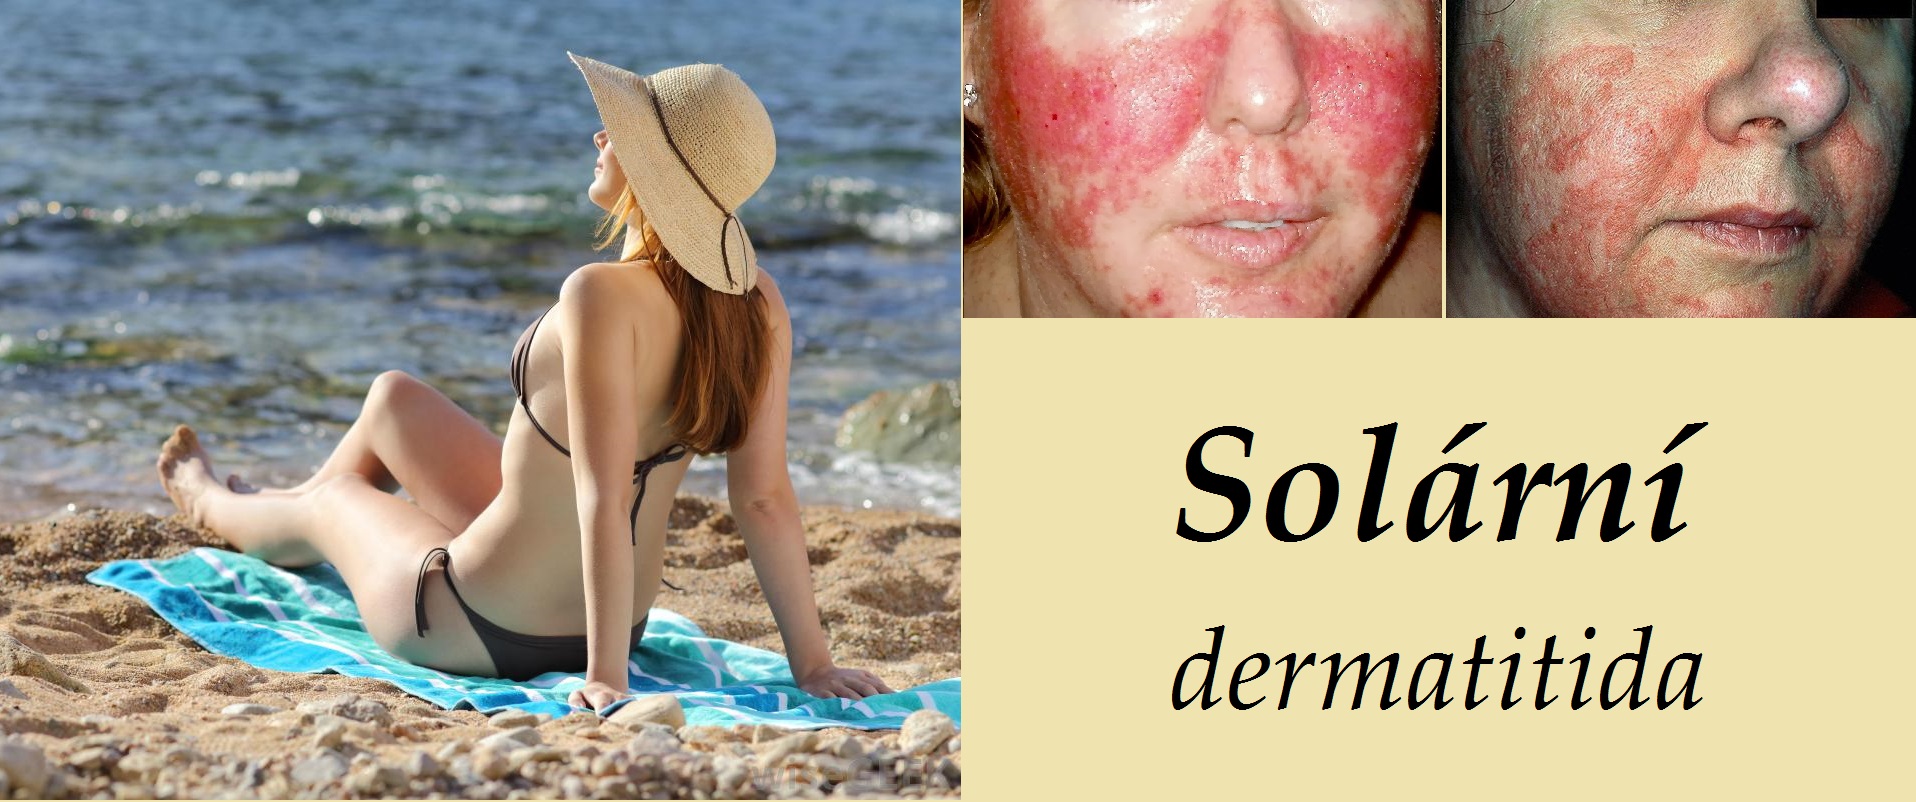 solarni dermatitida fotografie priznaky projevy symptomy pricina lecba obrazek